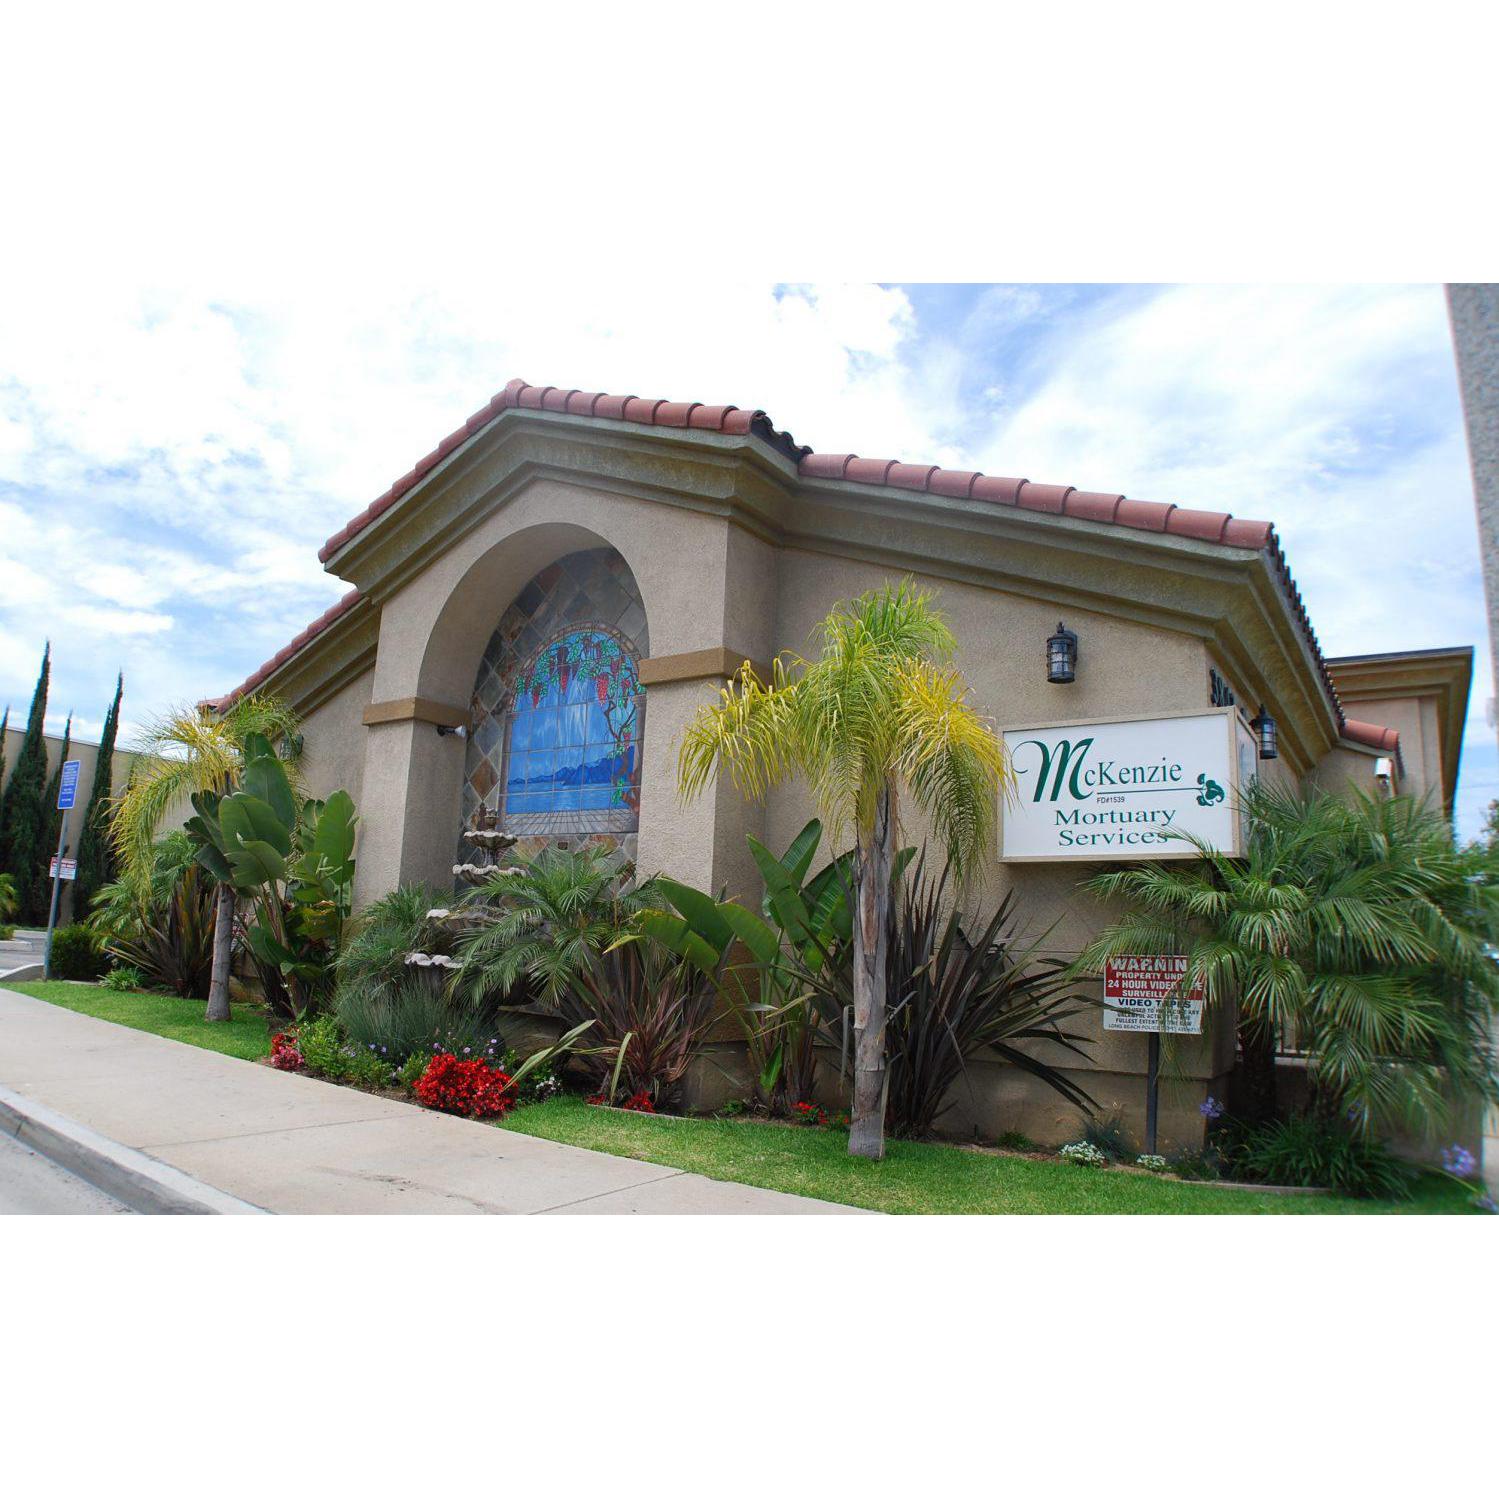 McKenzie Mortuary Services - Long Beach, CA 90804 - (562)961-9301 | ShowMeLocal.com